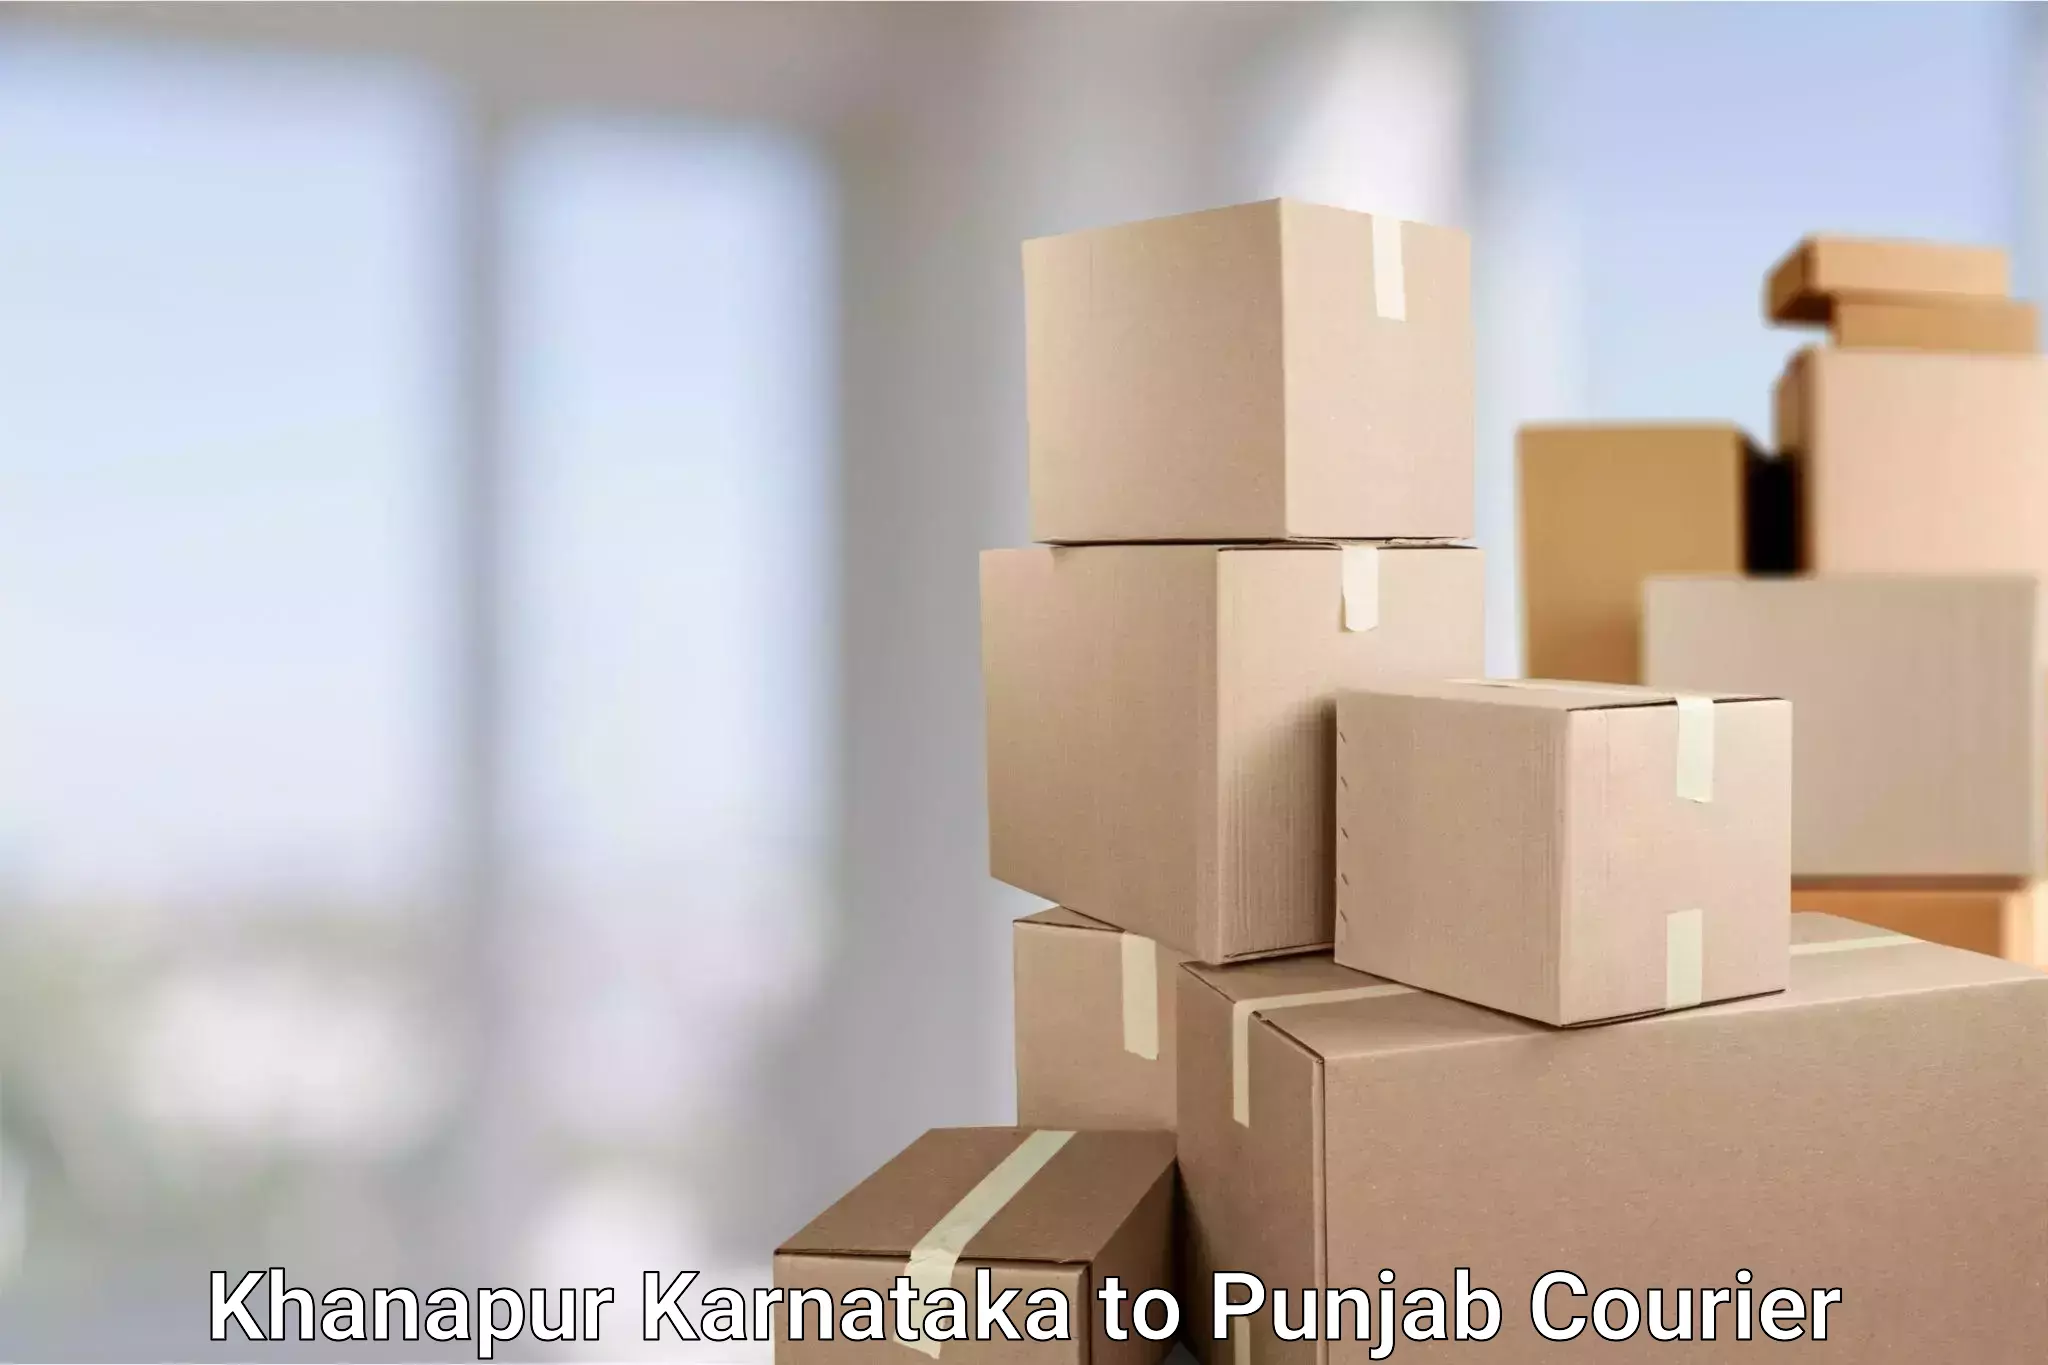 International parcel service Khanapur Karnataka to Muktsar